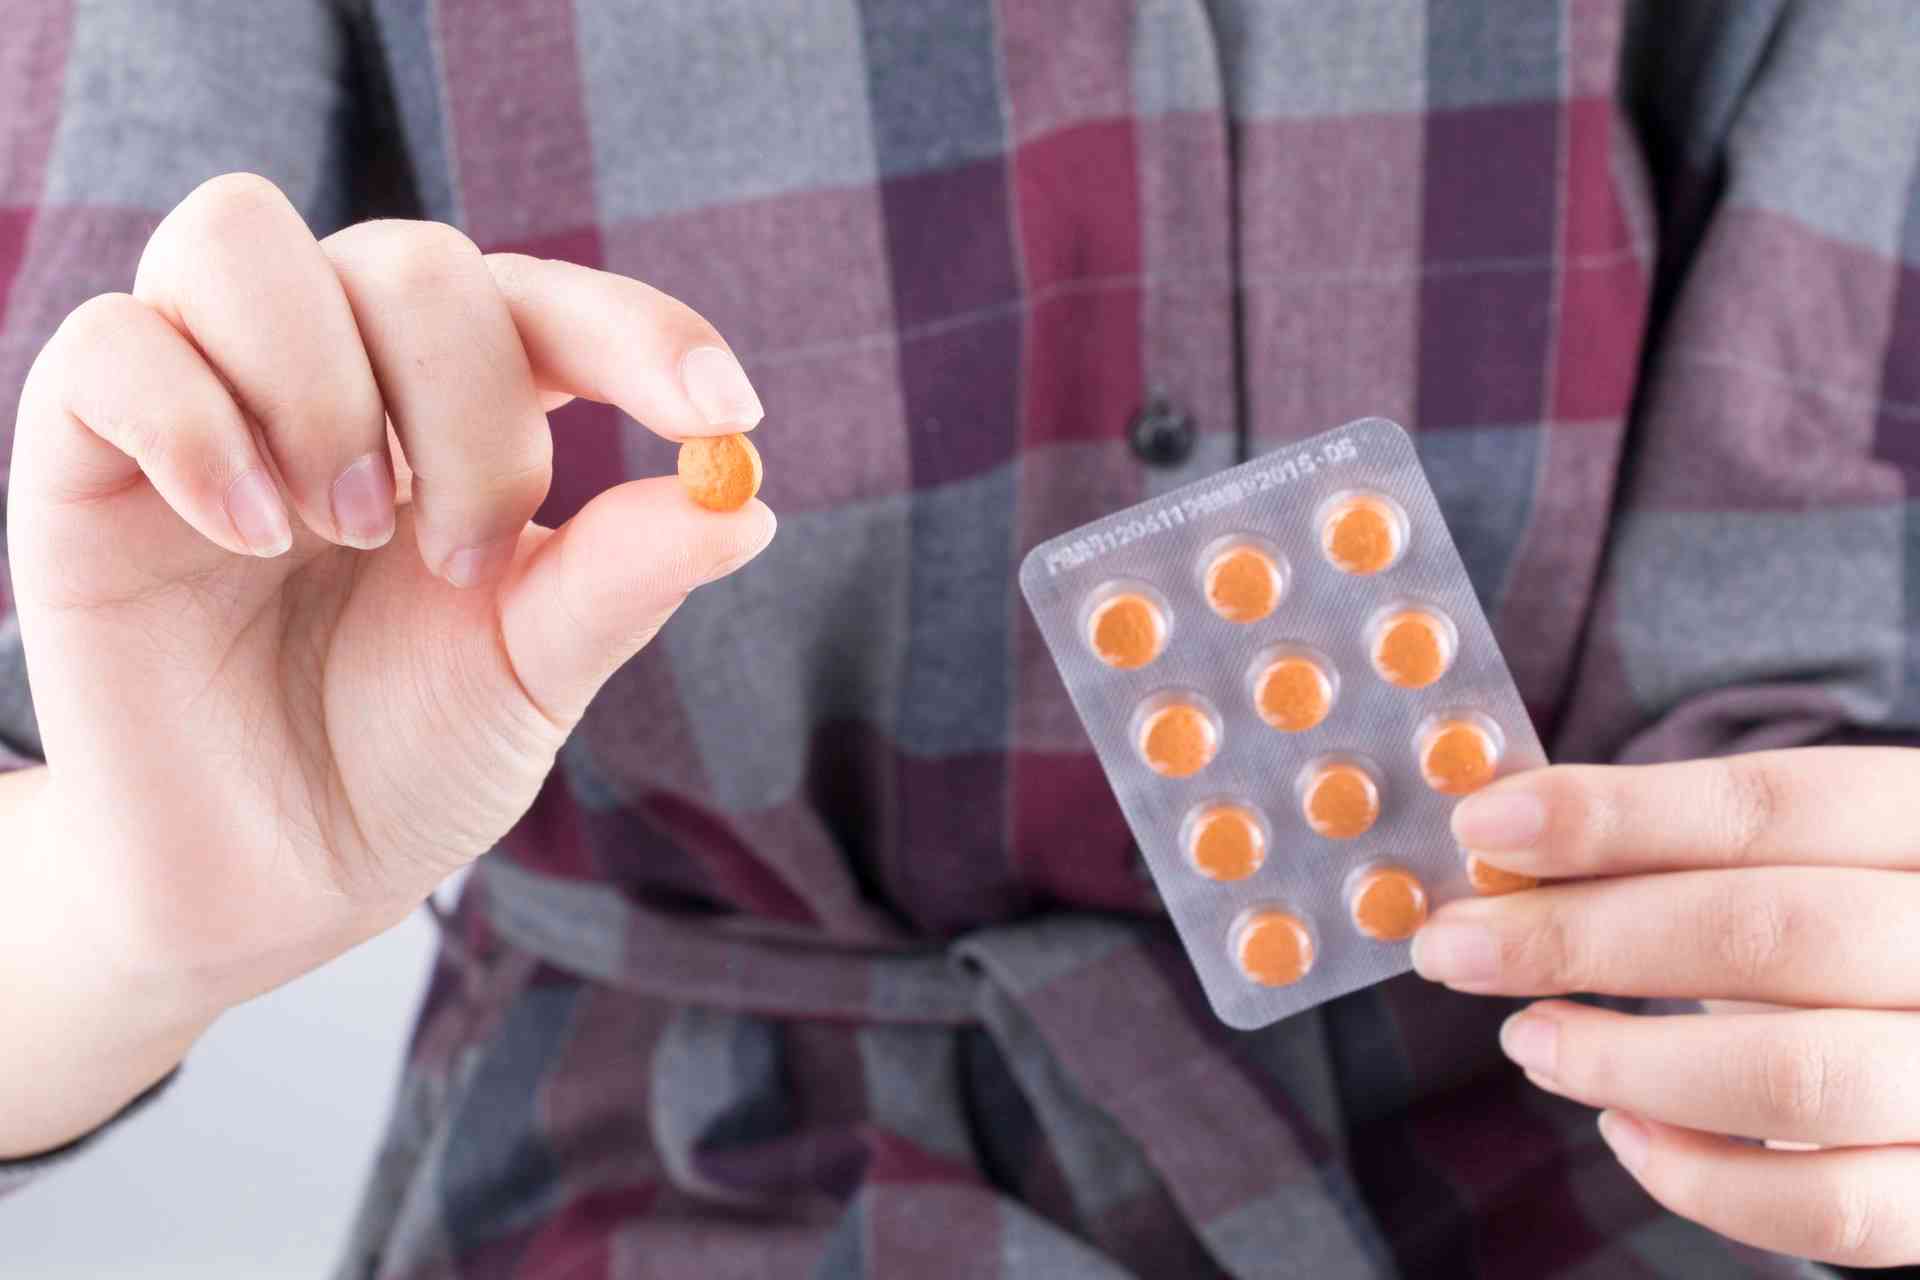 服用避孕药后吃西柚可能会失效